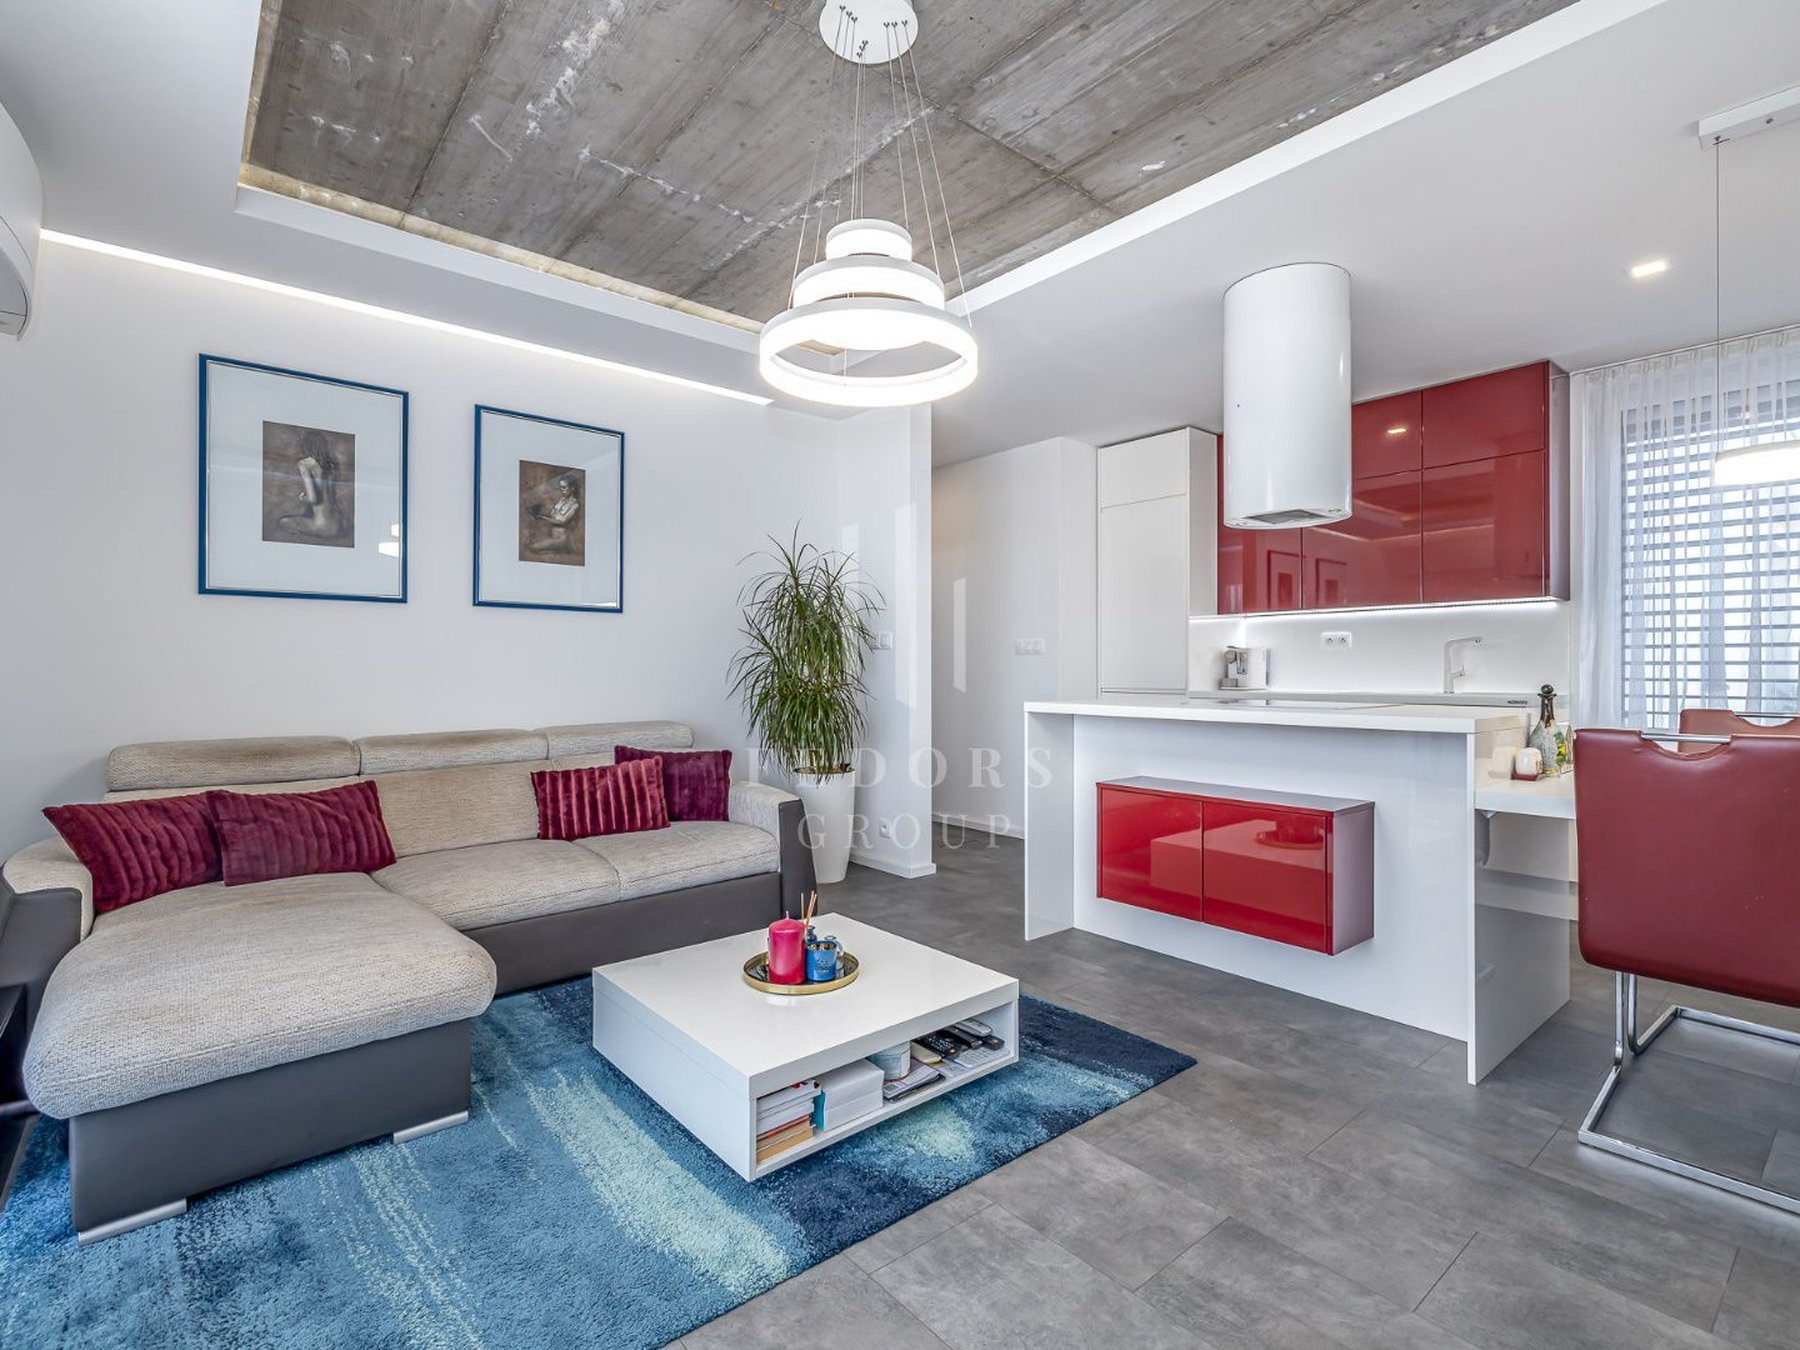 2 izbový byt 60 m² , Novostavba